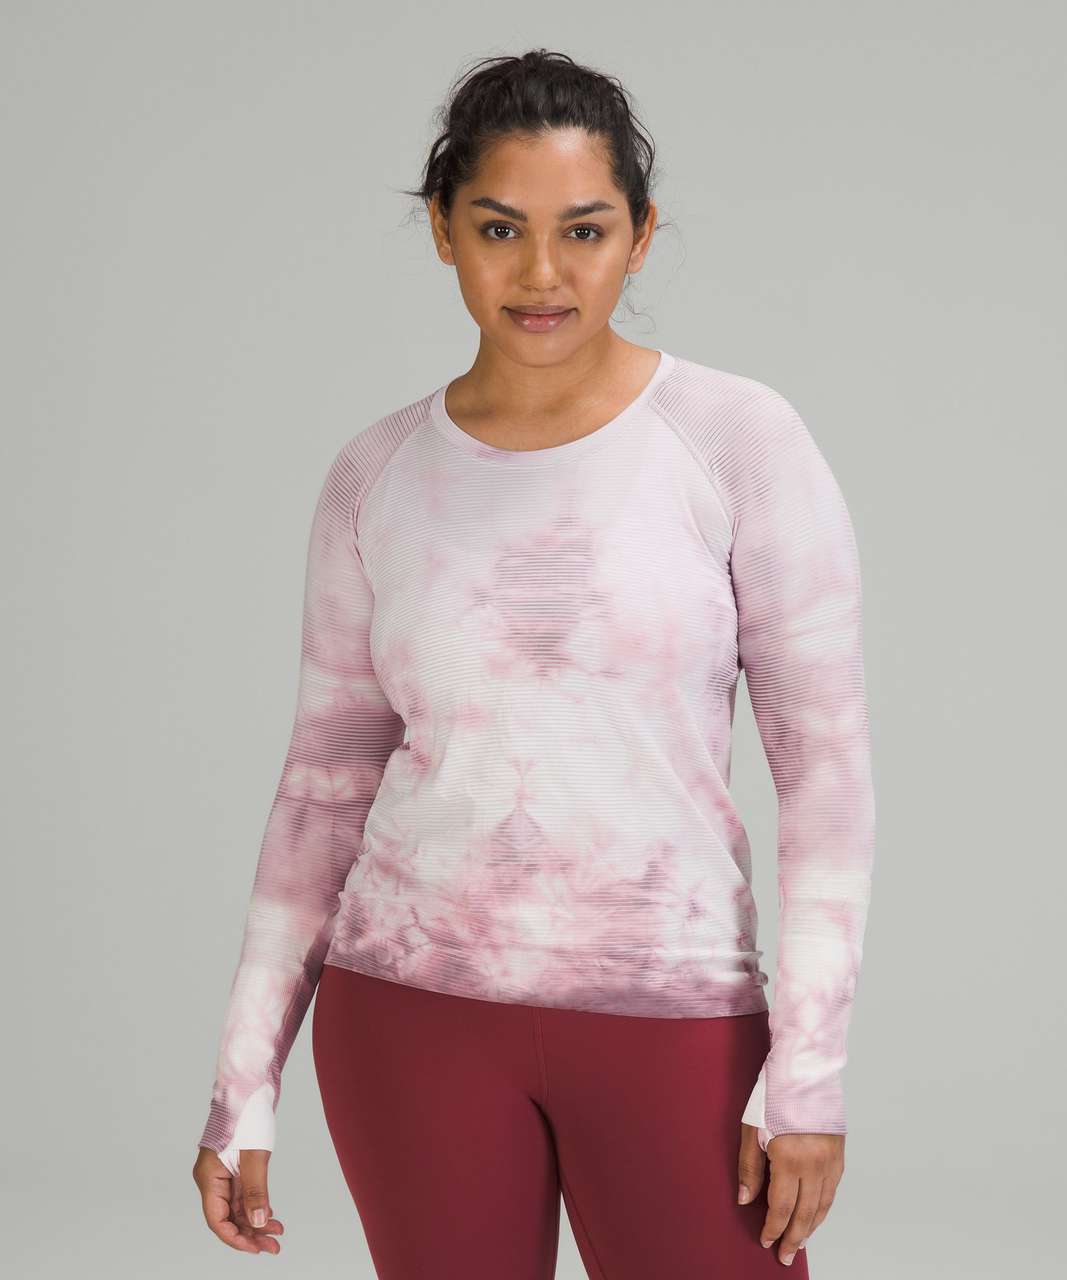 Lululemon Swiftly Tech Long Sleeve Shirt 2.0 - Shibori Stripe Pink Taupe